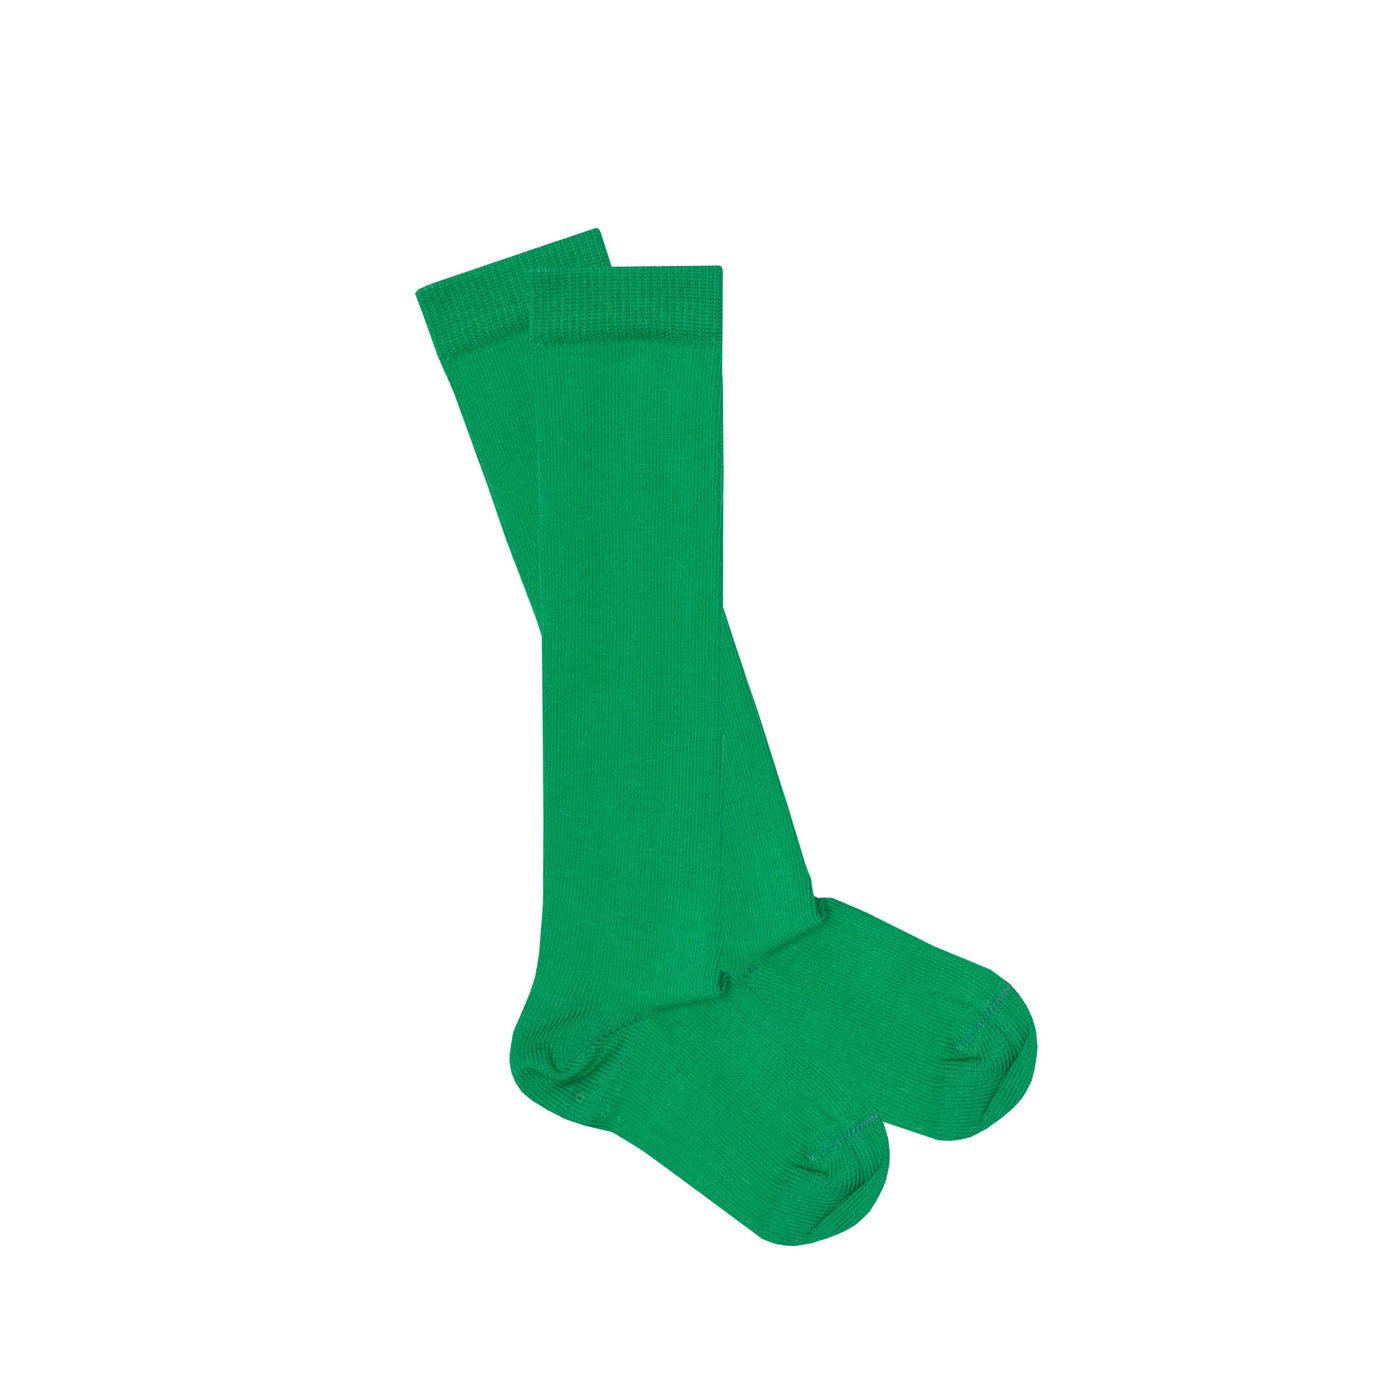 Slugs & Snails Block Colour Adult Unisex Knee Socks - Green